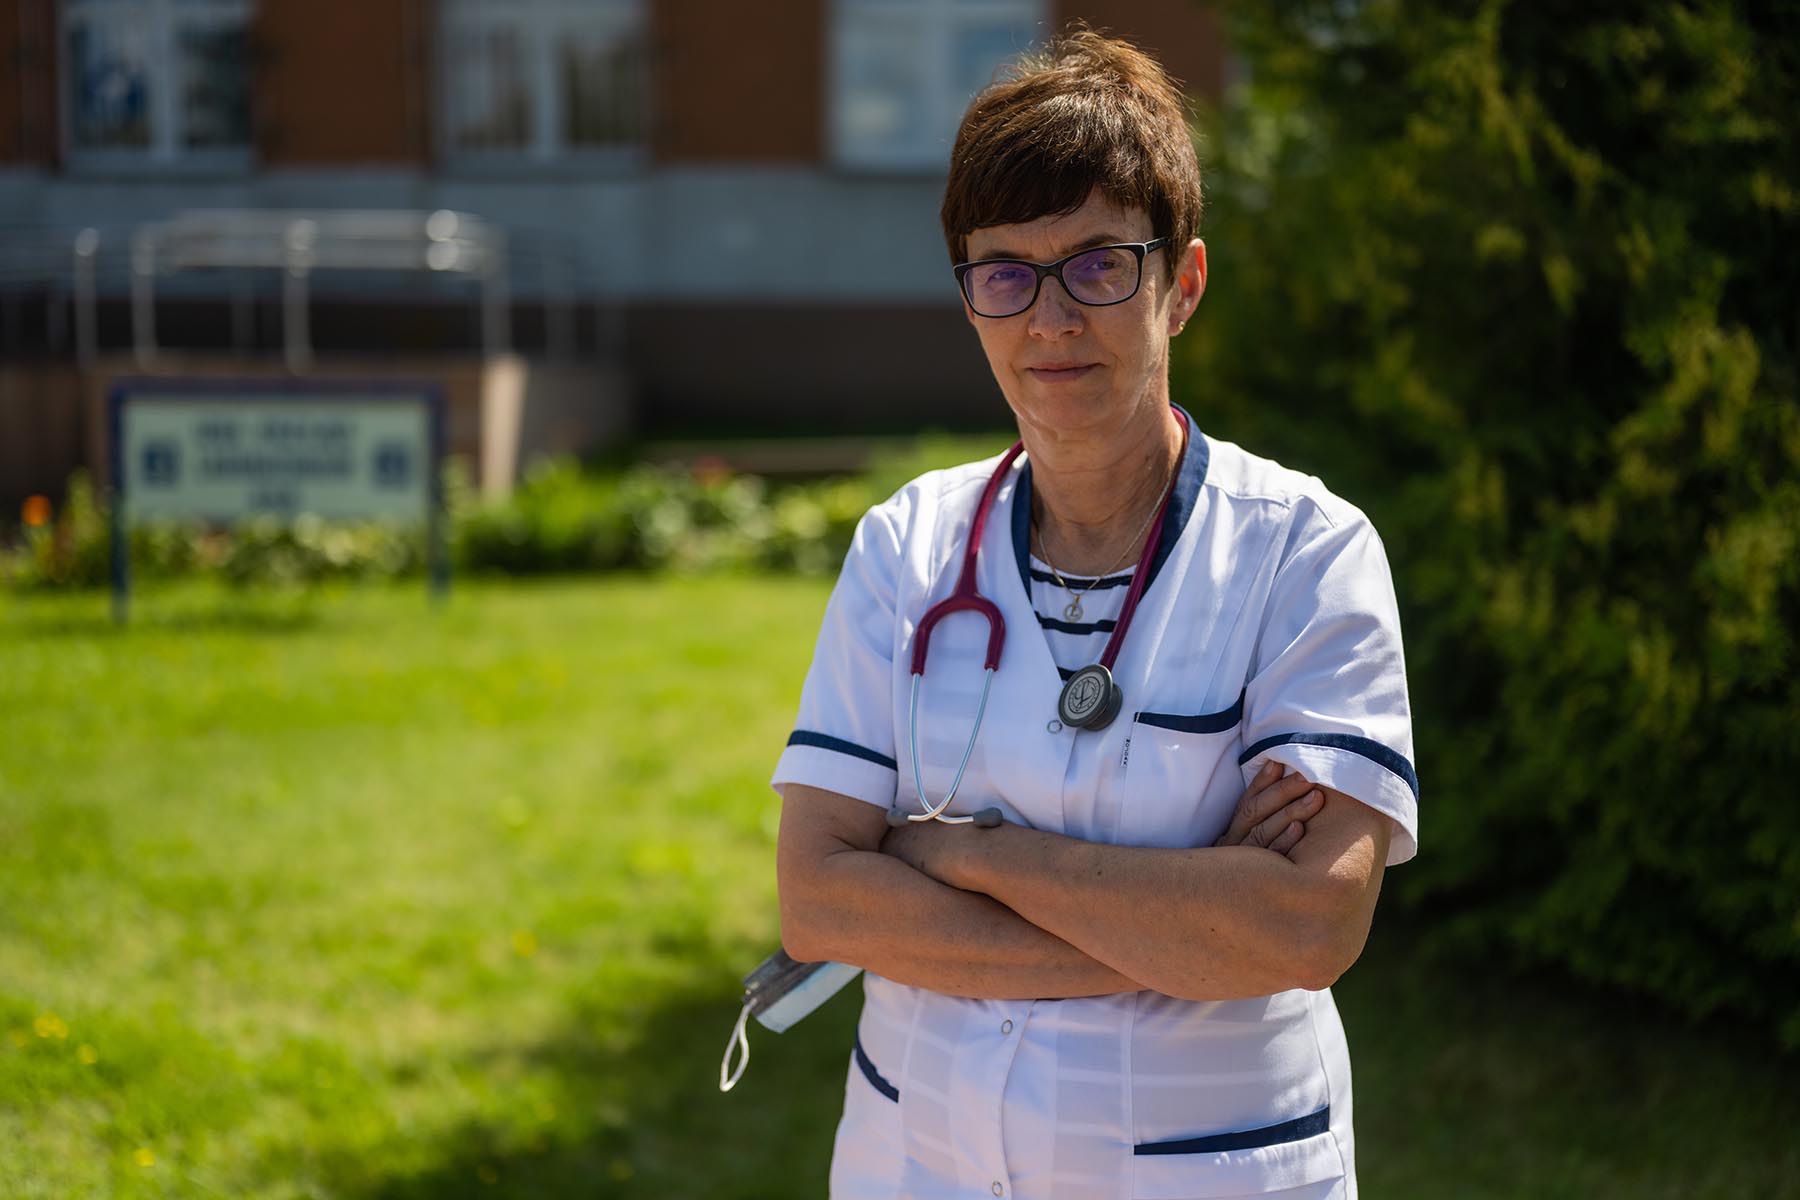 Lucyna Marciniak przed szpitalem, w którym pracuje: – Wszystko, co robię, wynika z wierności przysiędze lekarskiej i ludzkiej przyzwoitości